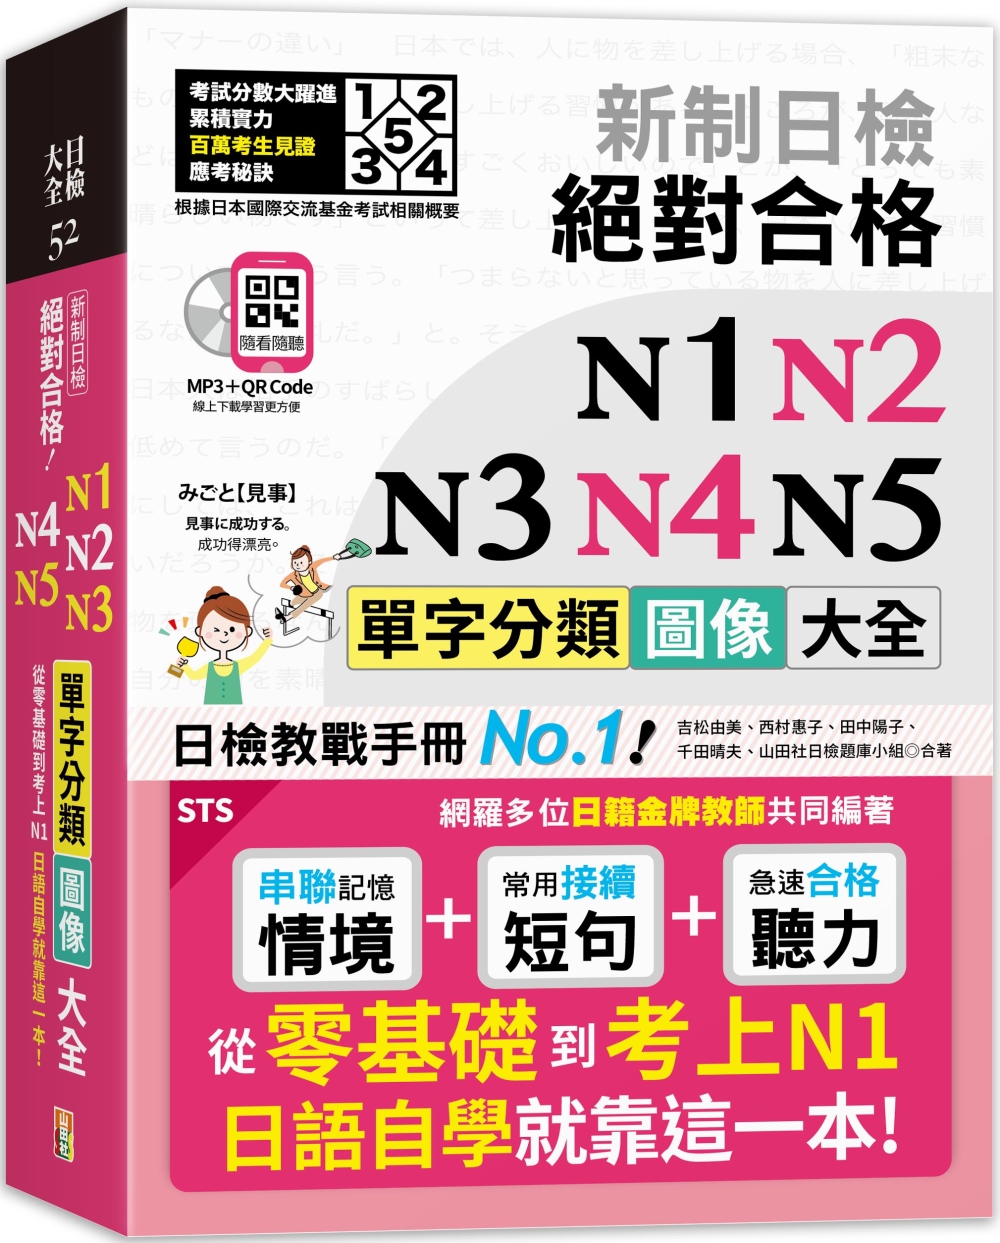 新制日檢 絕對合格 N1,N2,N3,N4,N5單字分類圖像...